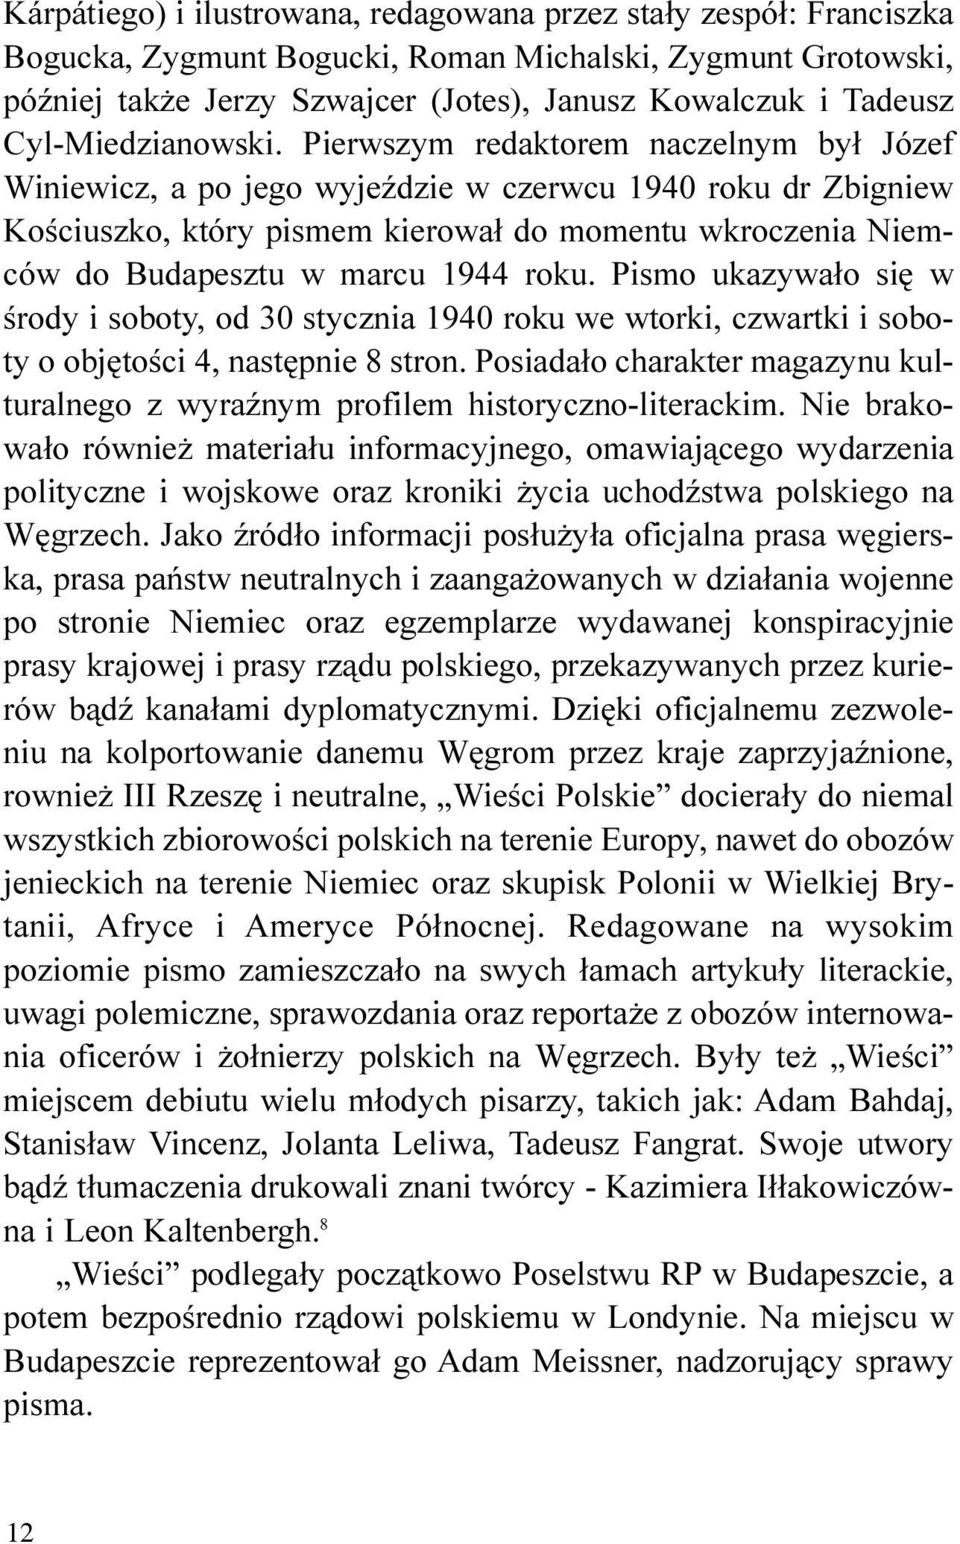 Pierwszym redaktorem naczelnym by³ Józef Winiewicz, a po jego wyjeÿdzie w czerwcu 1940 roku dr Zbigniew Koœciuszko, który pismem kierowa³ do momentu wkroczenia Niemców do Budapesztu w marcu 1944 roku.